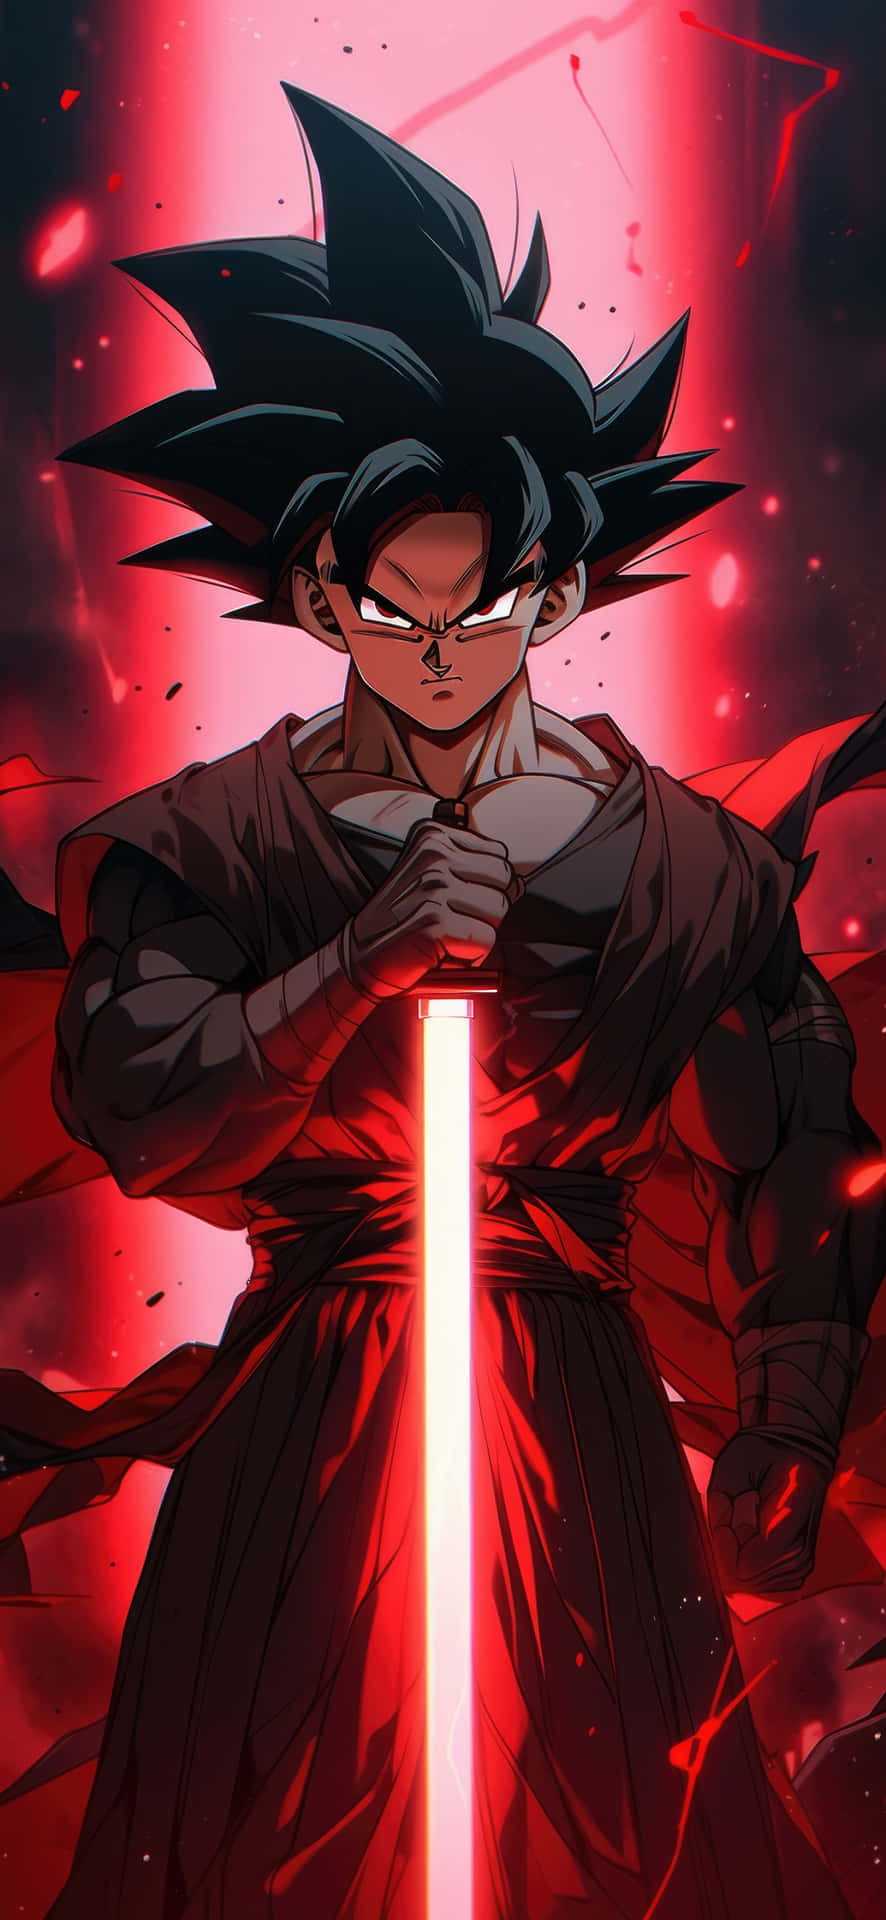 Goku Red Aura Power Up Wallpaper